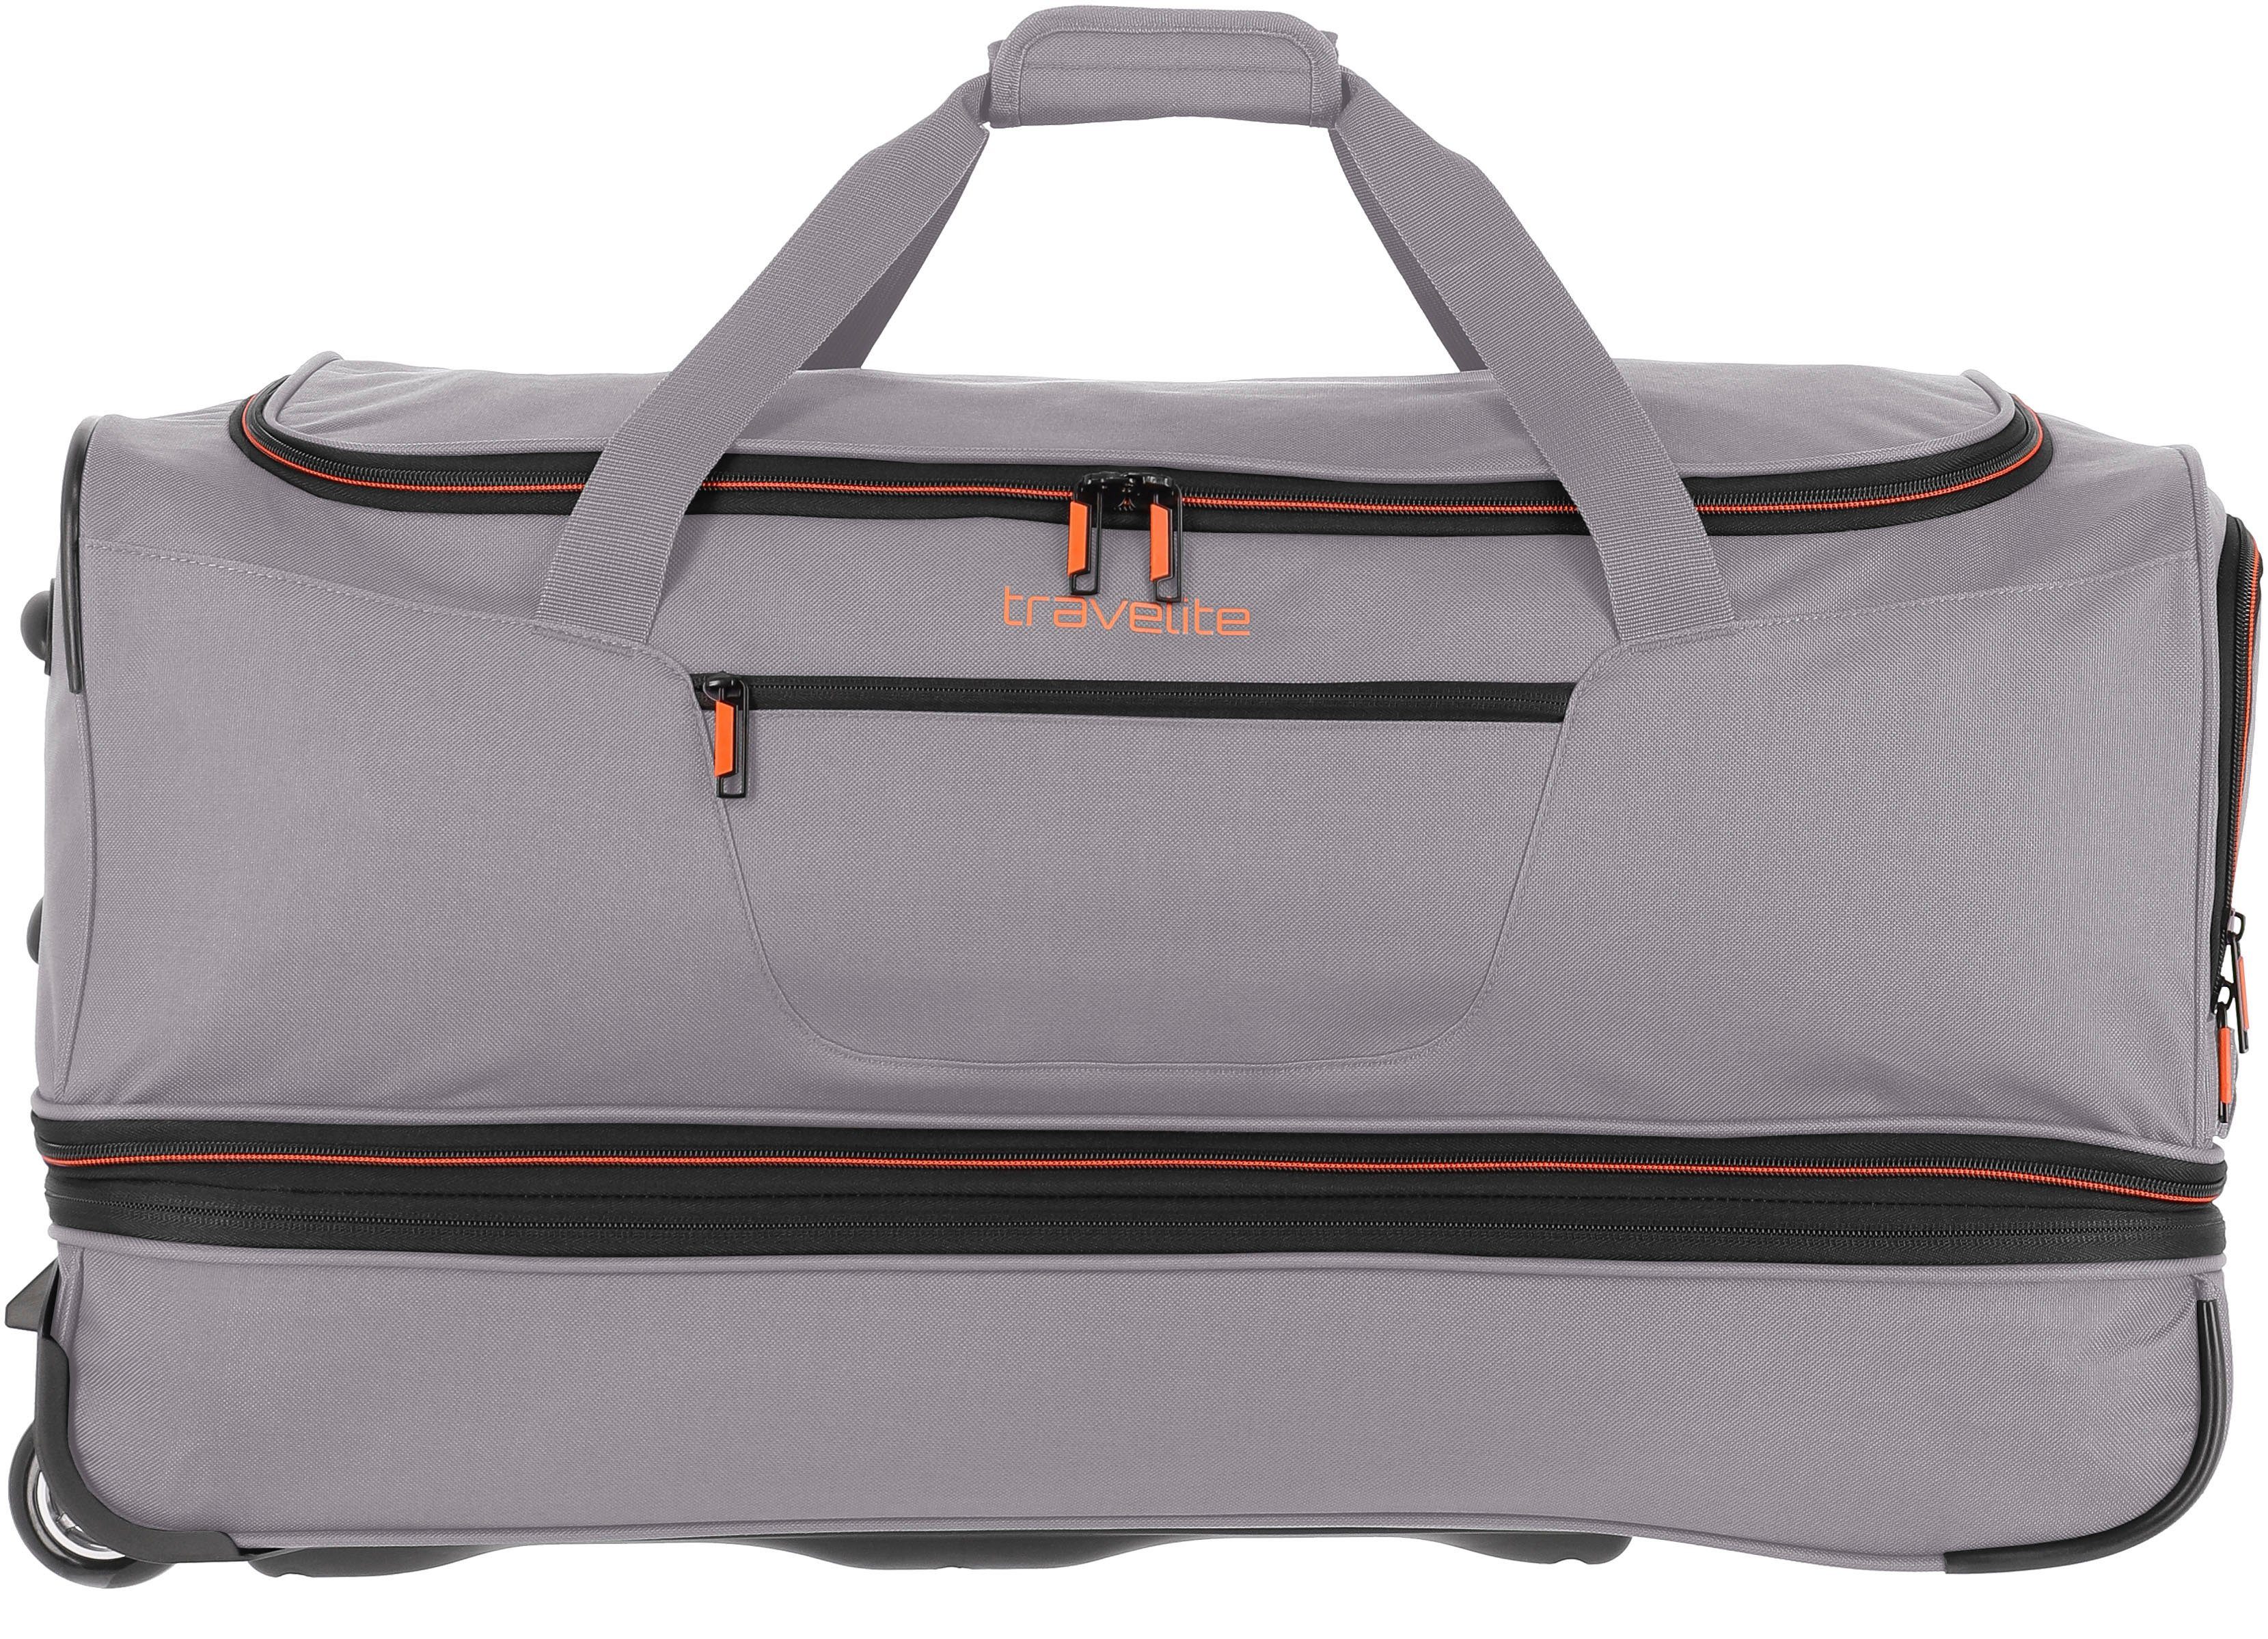 mit travelite cm, Volumenerweiterung Basics, Reisetasche grau/orange, 70 und Trolleyfunktion